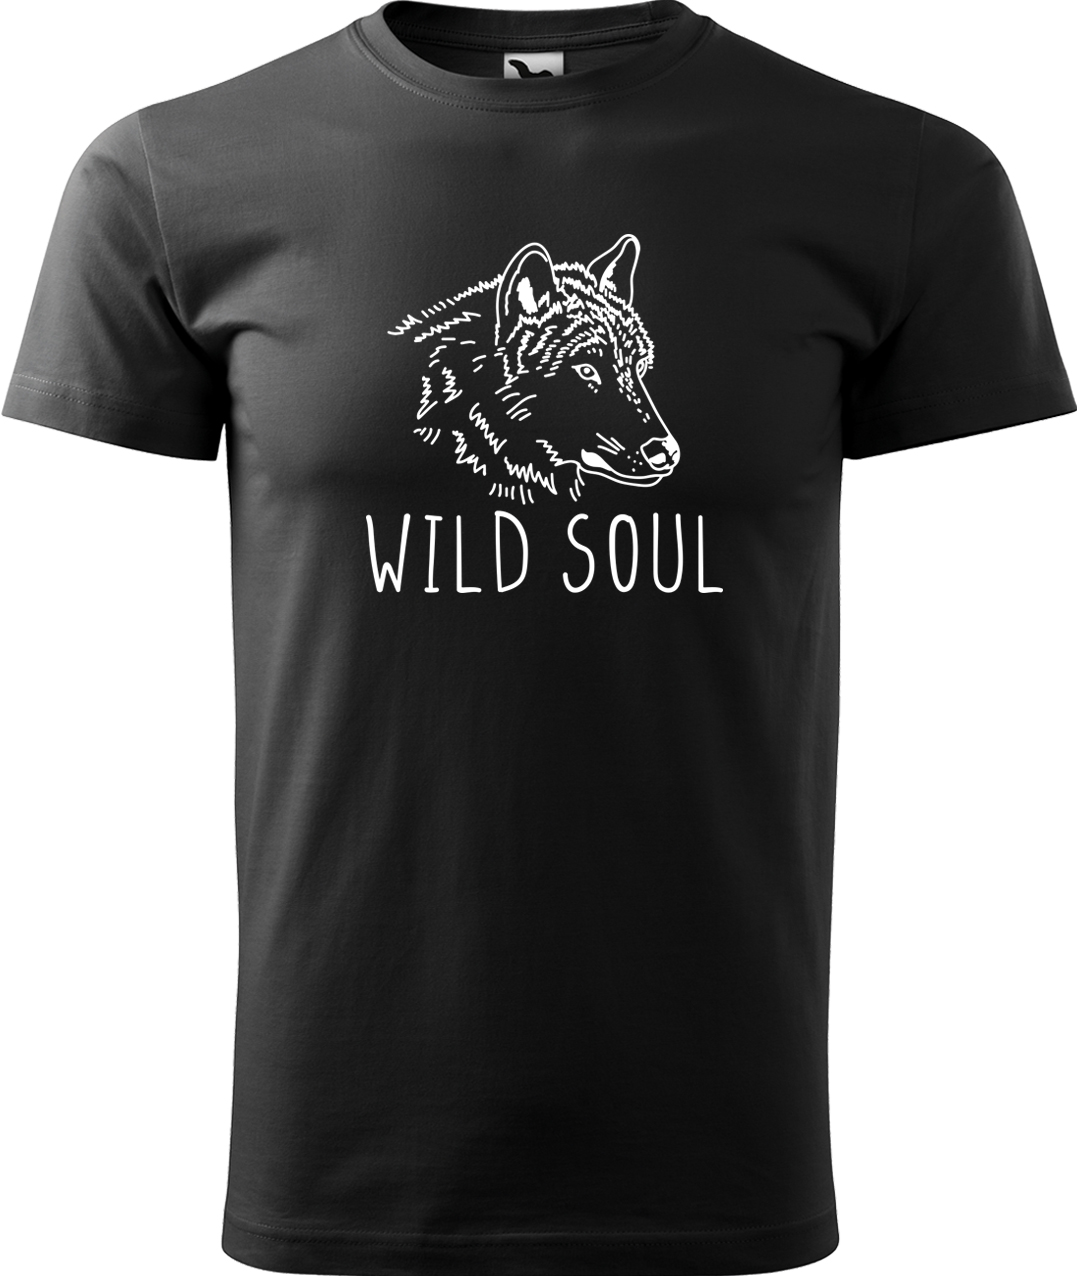 Pánské tričko s vlkem - Wild soul Velikost: 4XL, Barva: Černá (01), Střih: pánský